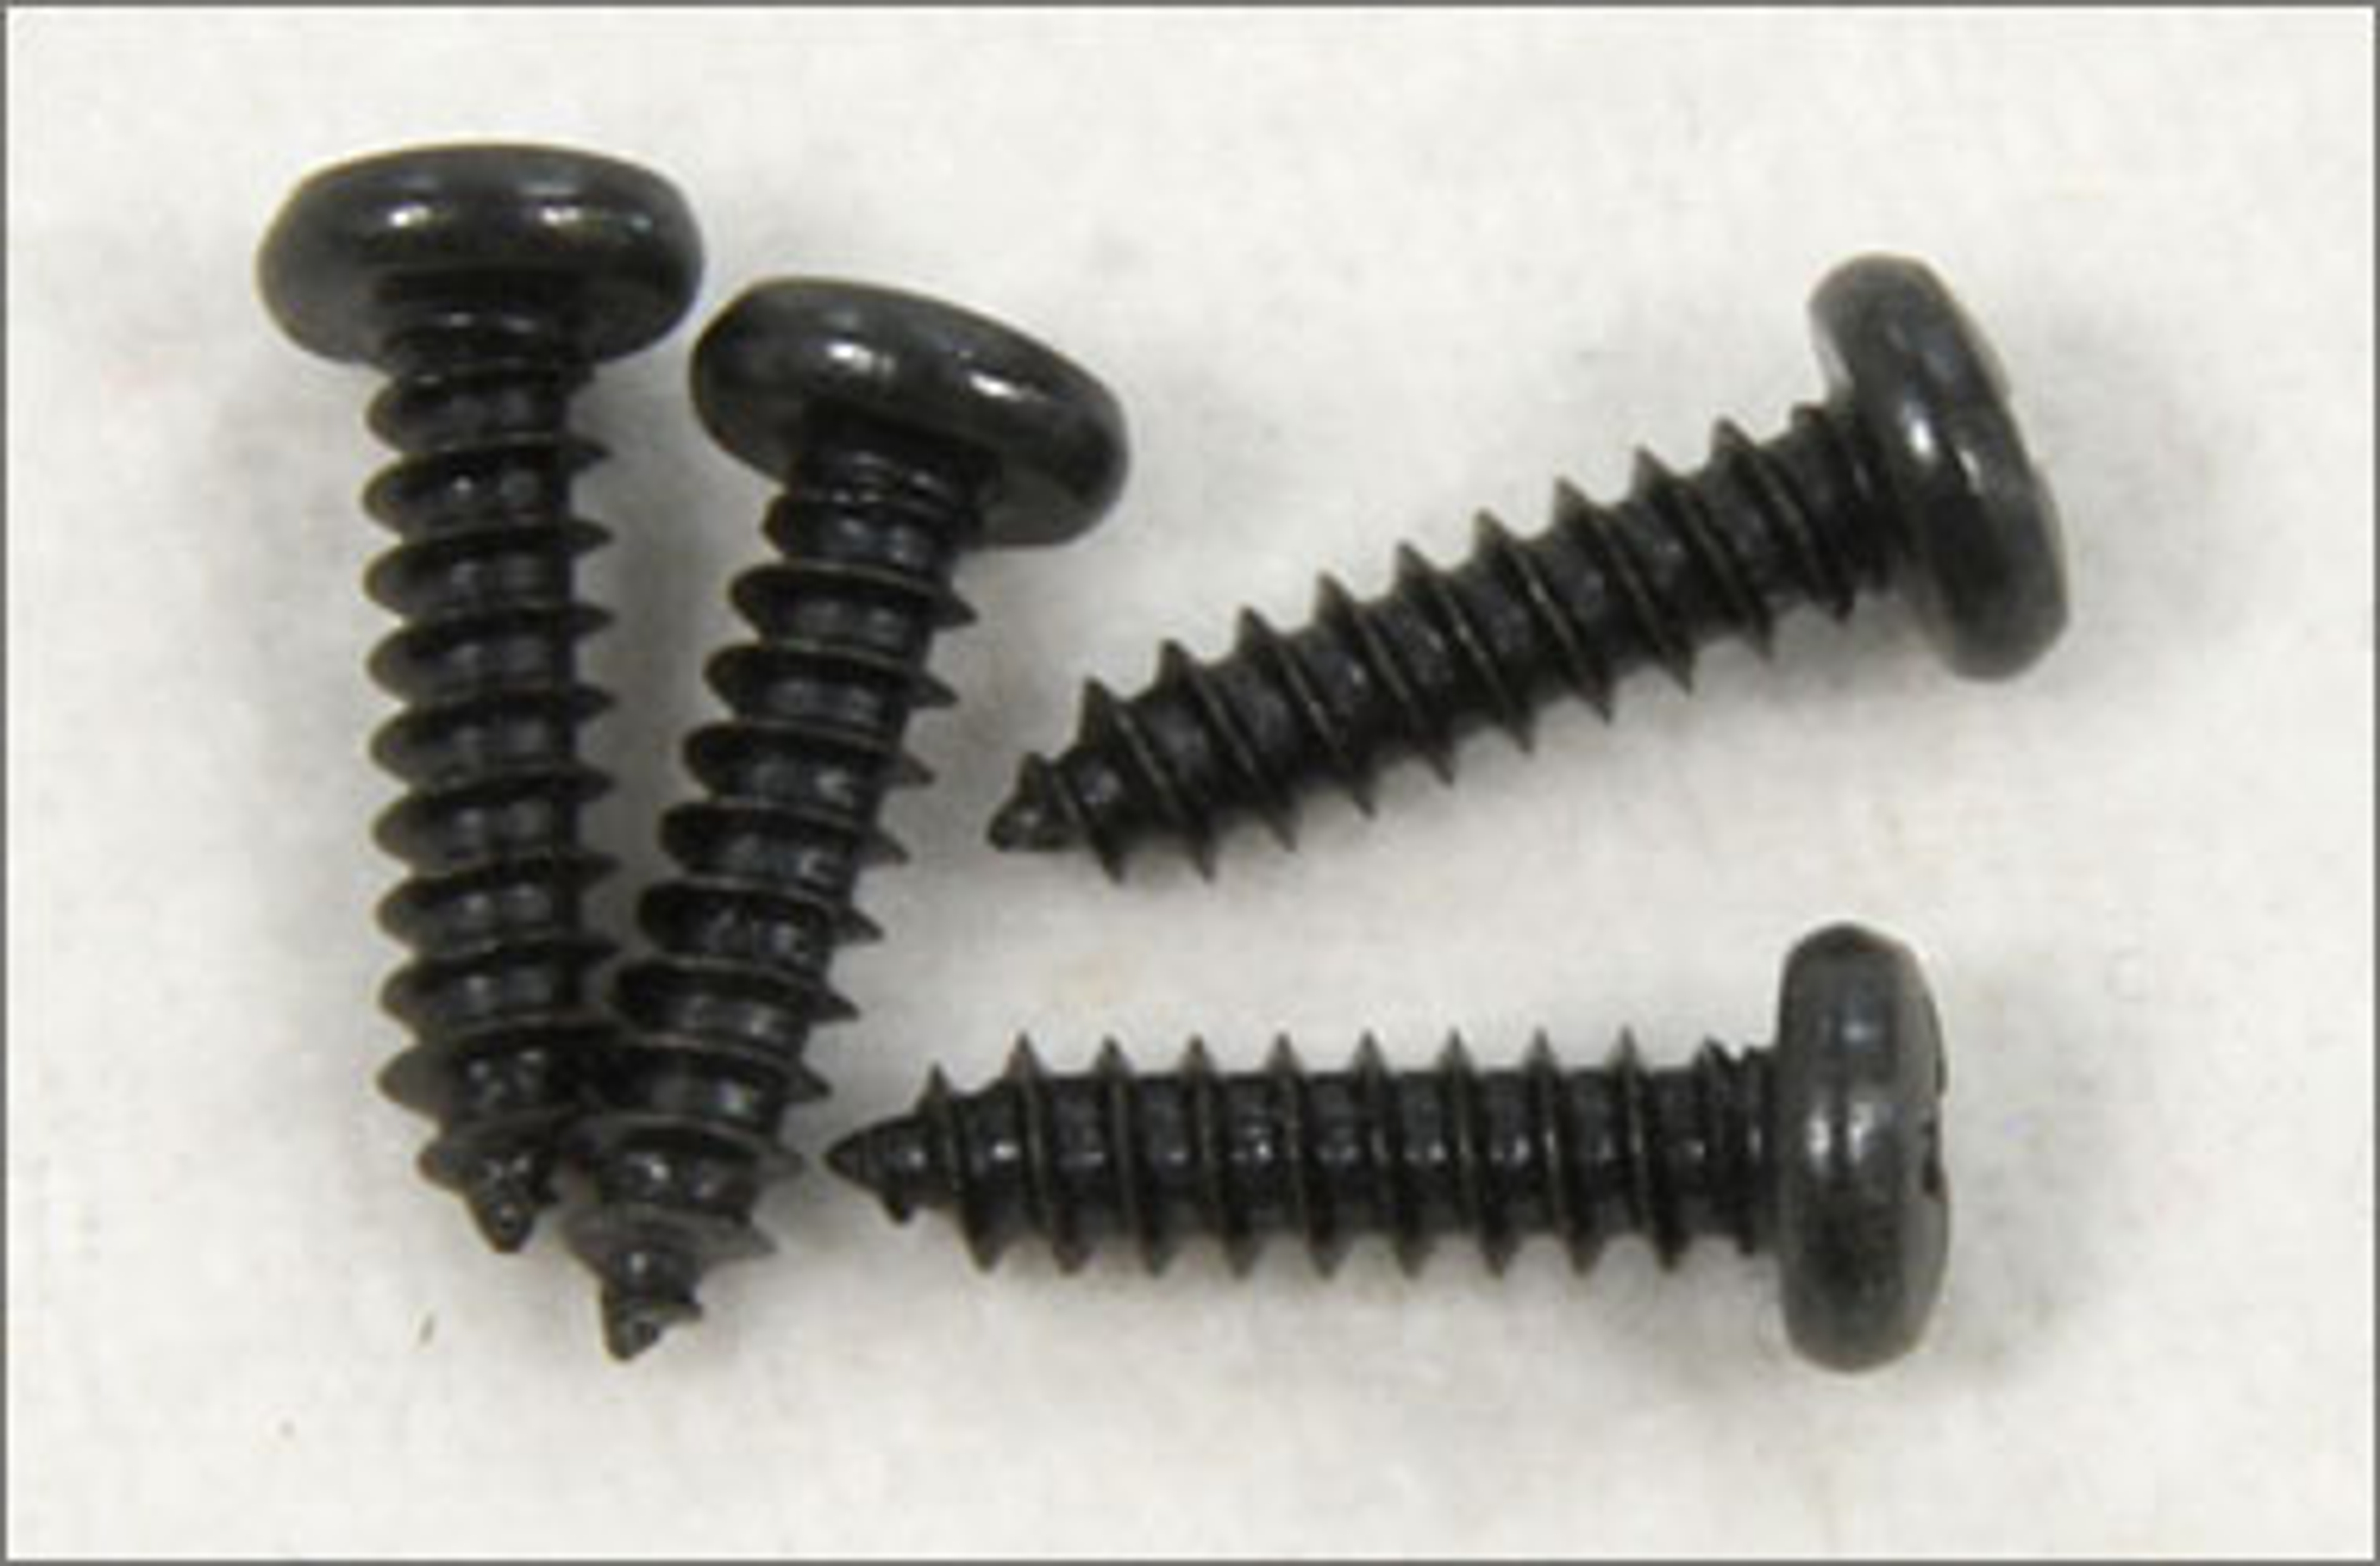 305023, Sheet metal screws, M3 x 12 mm, 4 pcs.